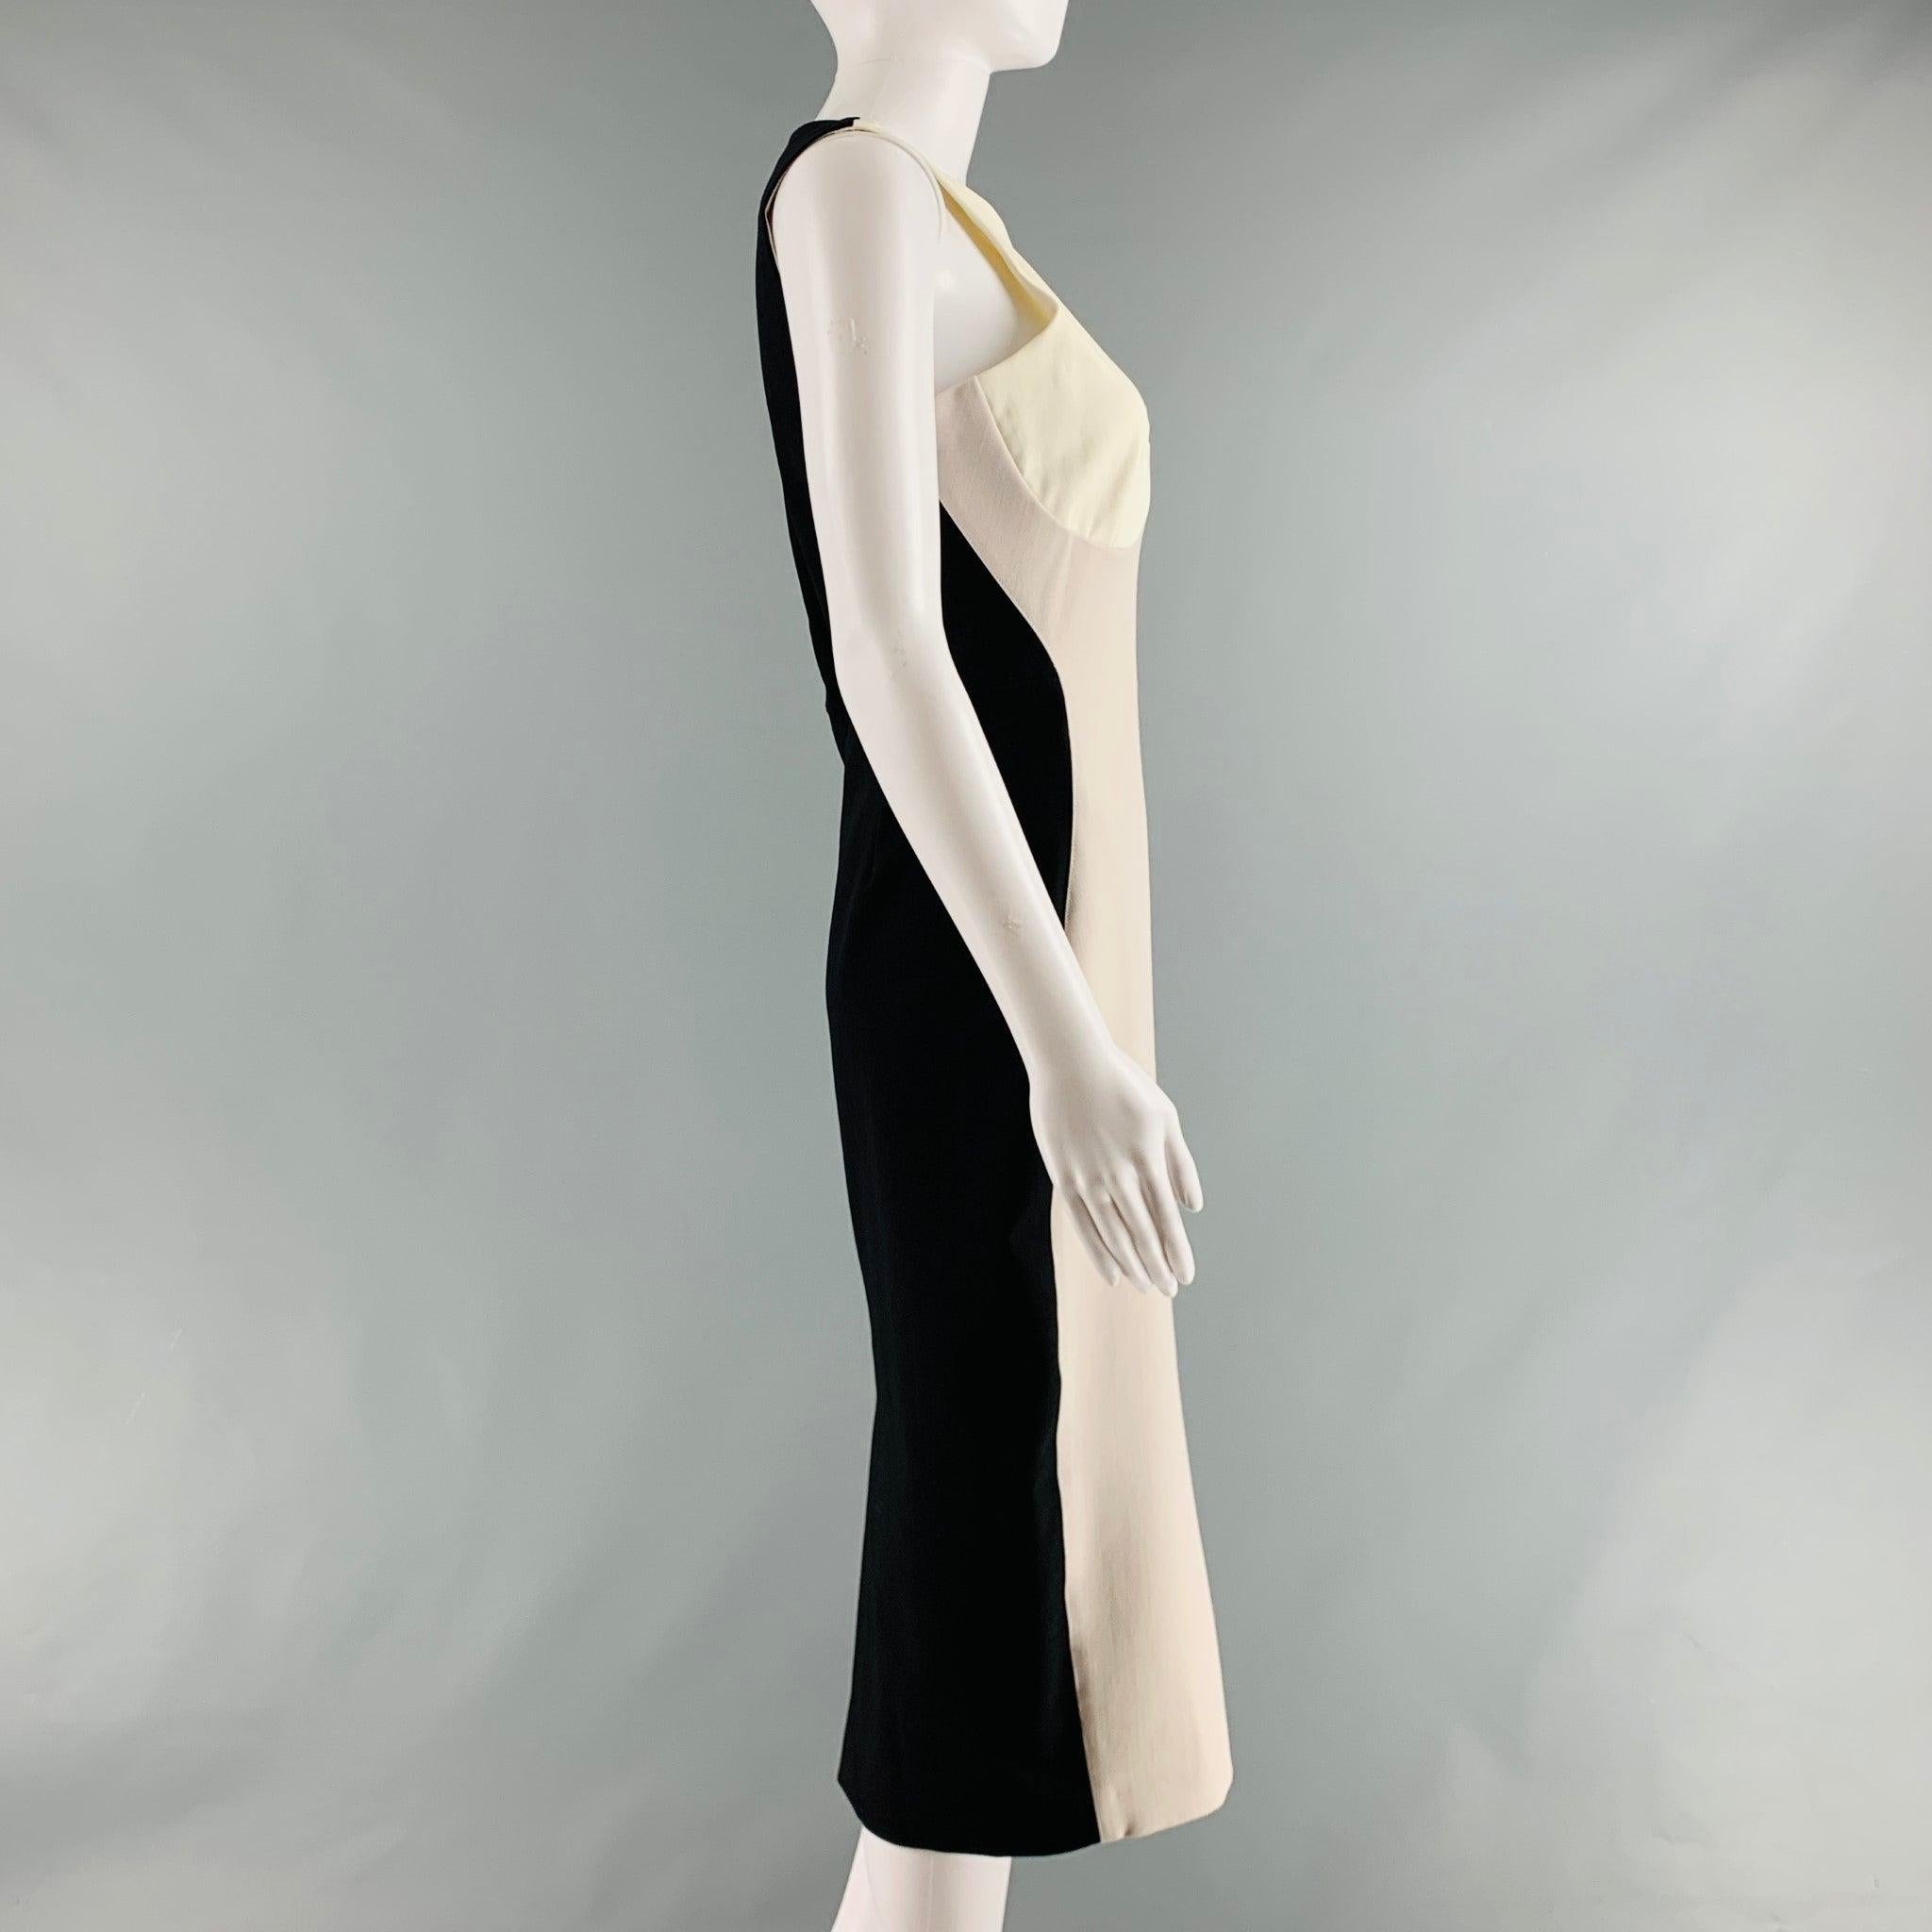 La robe midi STELLA McCARTNEY 2011 est réalisée en maille de polyamide et d'élasthanne noir, beige et écru et présente des empiècements contrastés, une fente au dos, un style moulant et une fermeture zippée au dos. Excellent état d'origine. 

Marqué